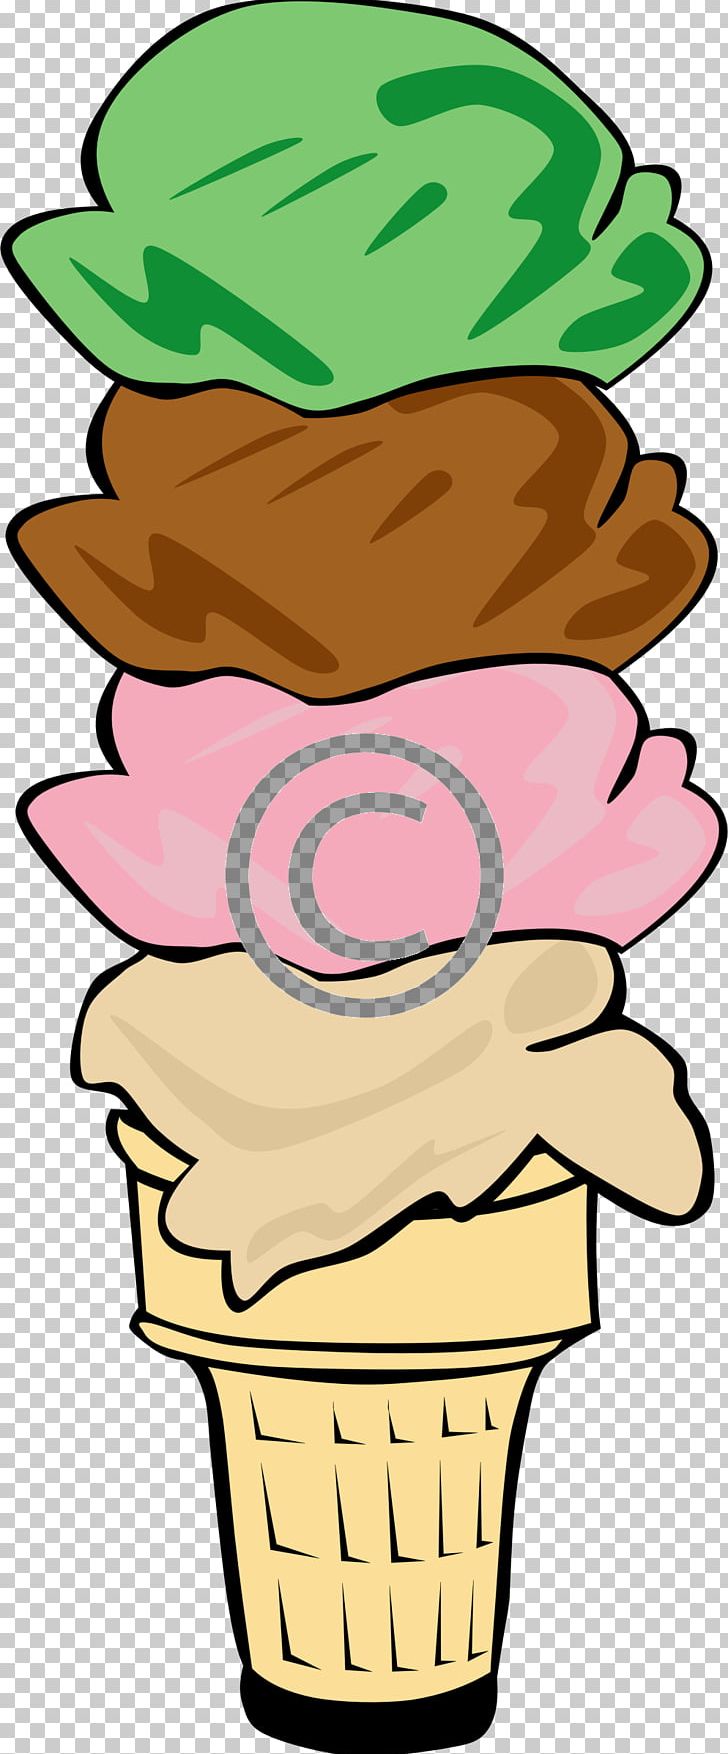 Ice Cream Cones Chocolate Ice Cream Sundae PNG, Clipart, Artwork, Chocolate, Chocolate Ice Cream, Chocolate Ice Cream, Cream Free PNG Download